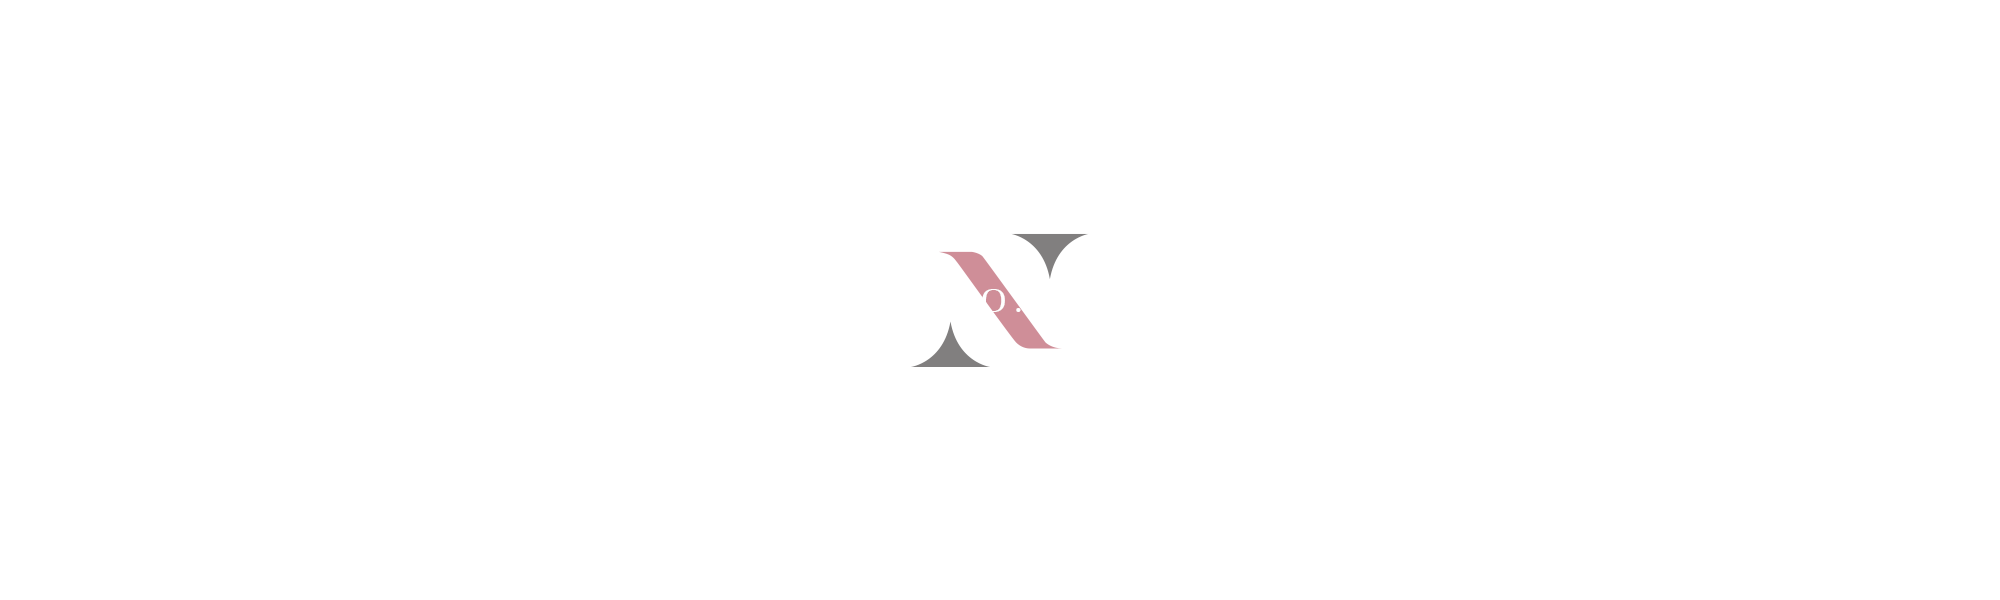 株式会社ACT